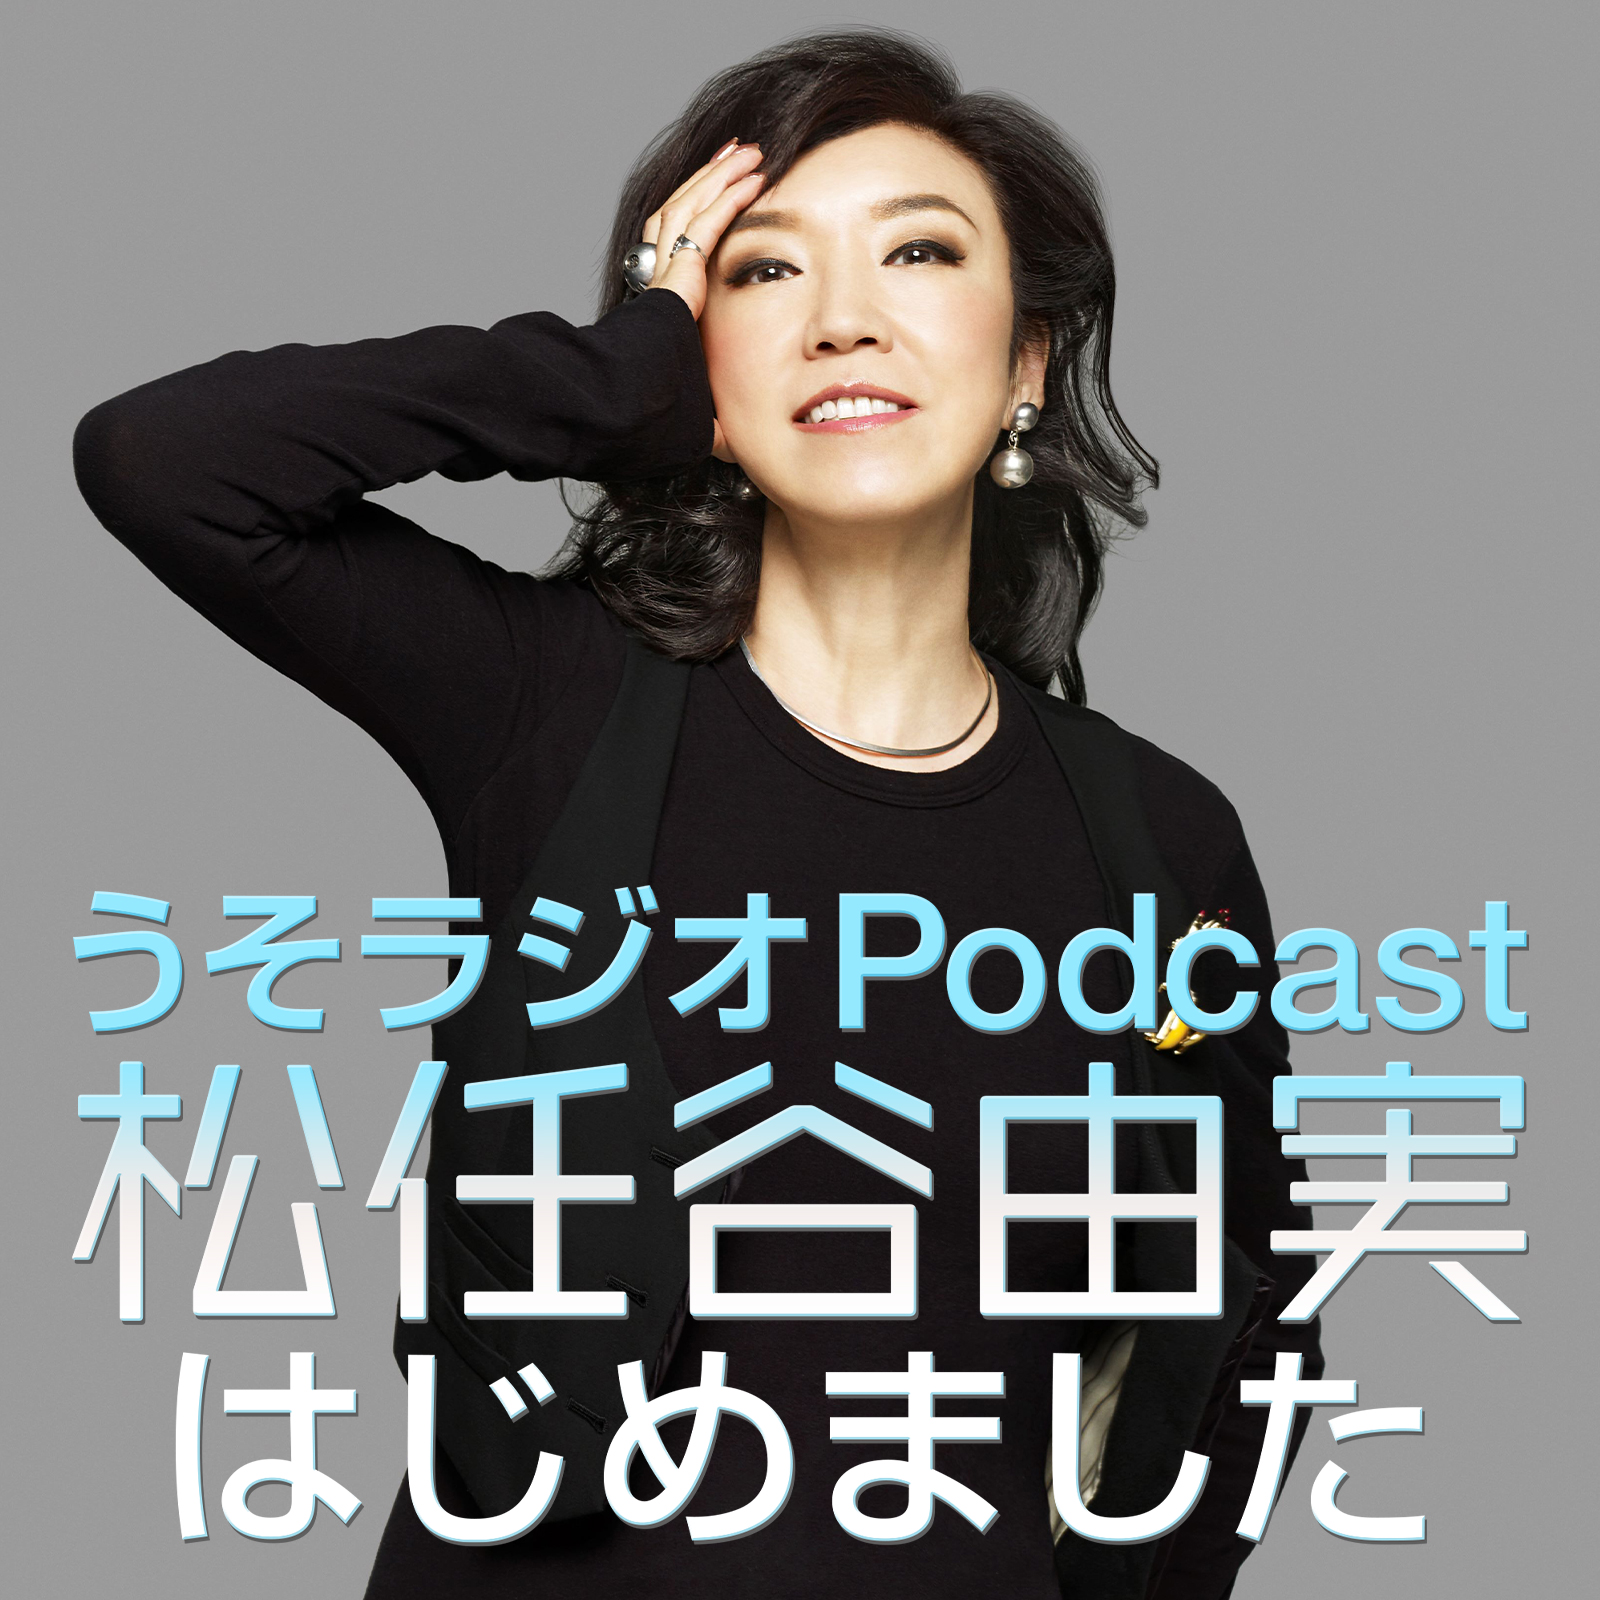 ニッポン放送 Podcast Station -ポッドキャストステーション-